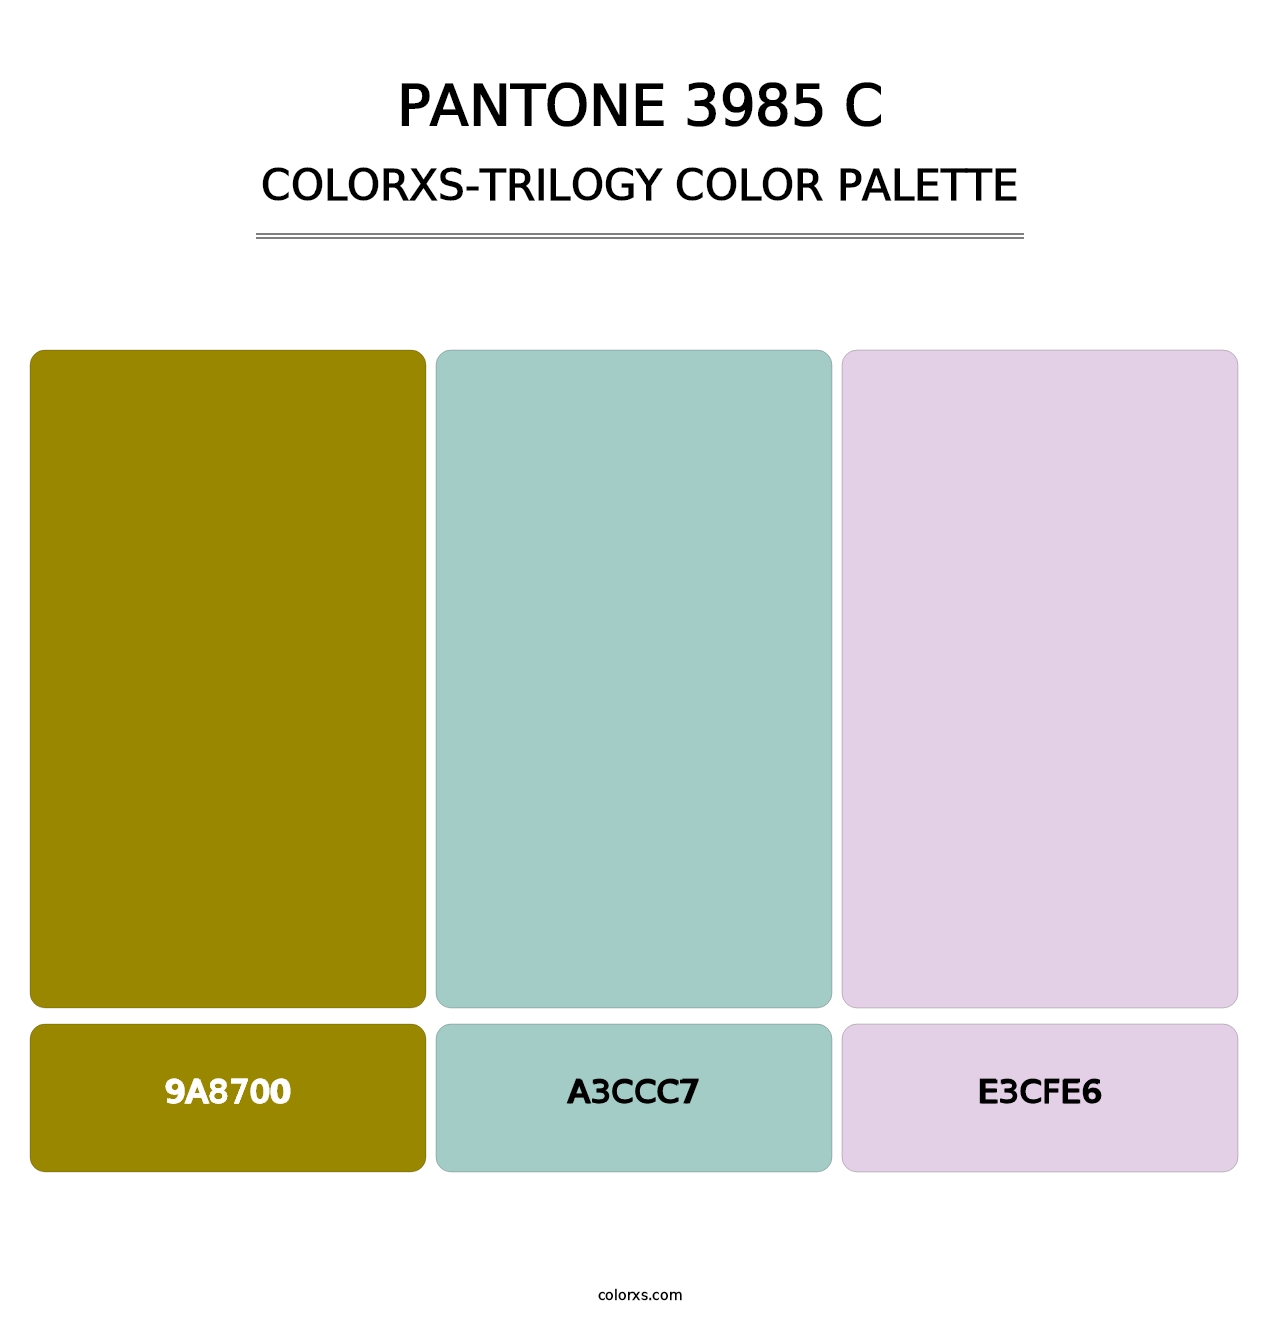 PANTONE 3985 C - Colorxs Trilogy Palette